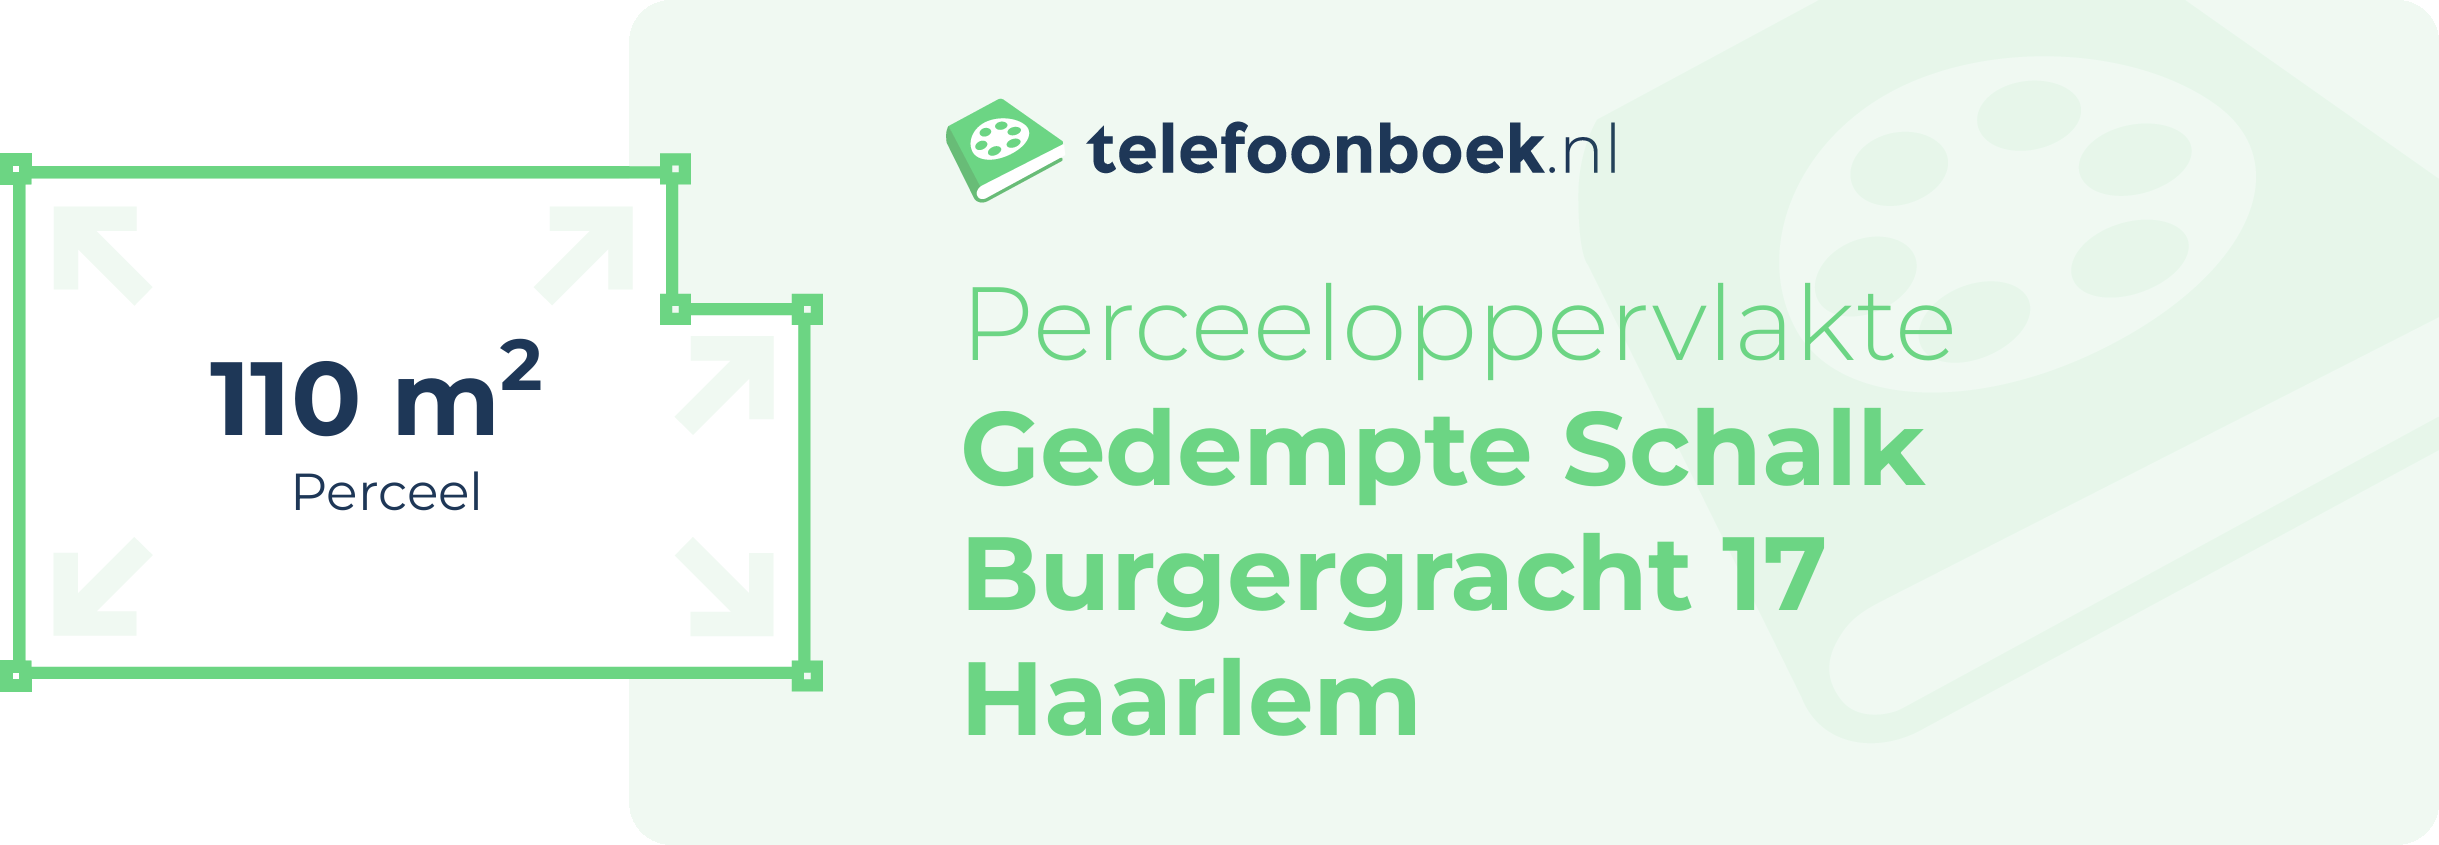 Perceeloppervlakte Gedempte Schalk Burgergracht 17 Haarlem